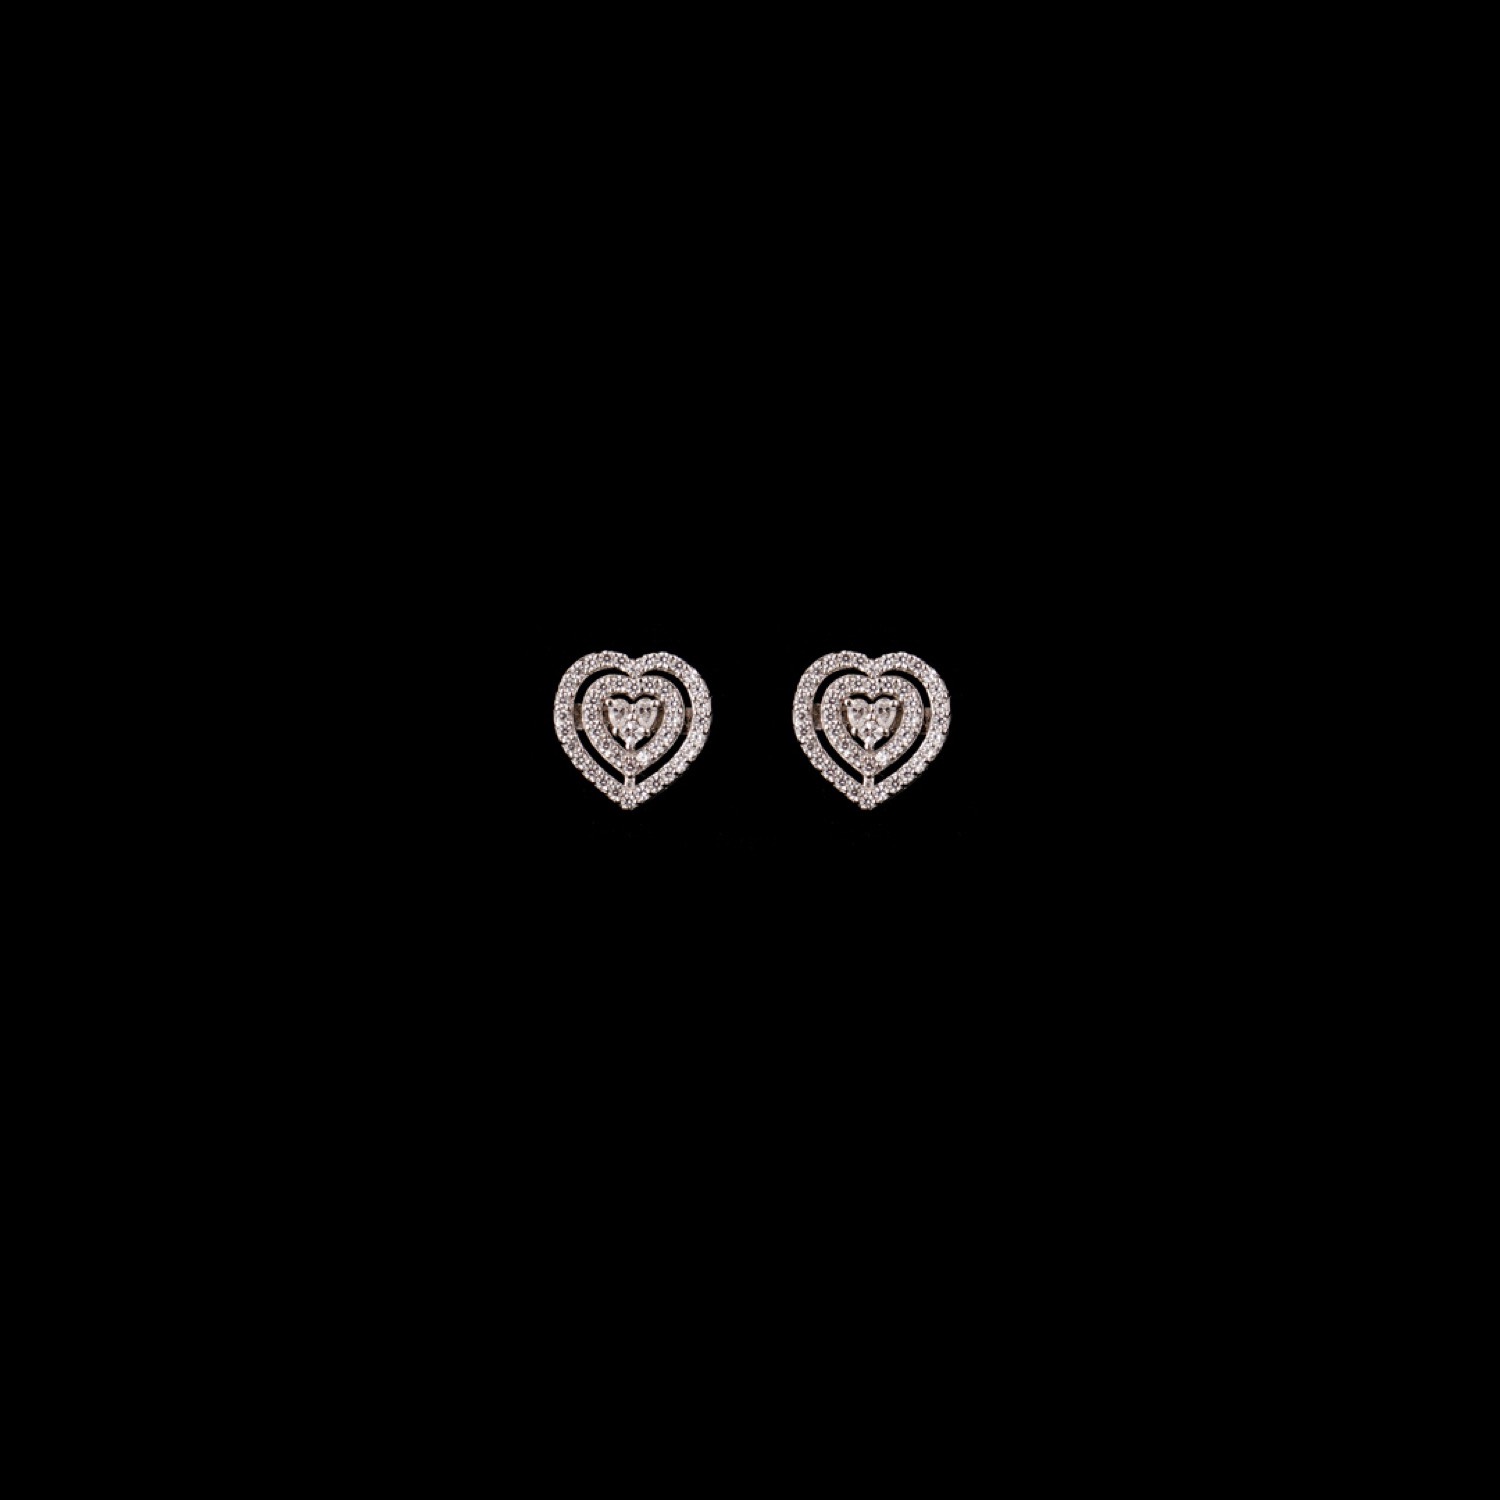 varam_earrings_102022_heart_shaped_hollow_design_studded_silver_earrings-1